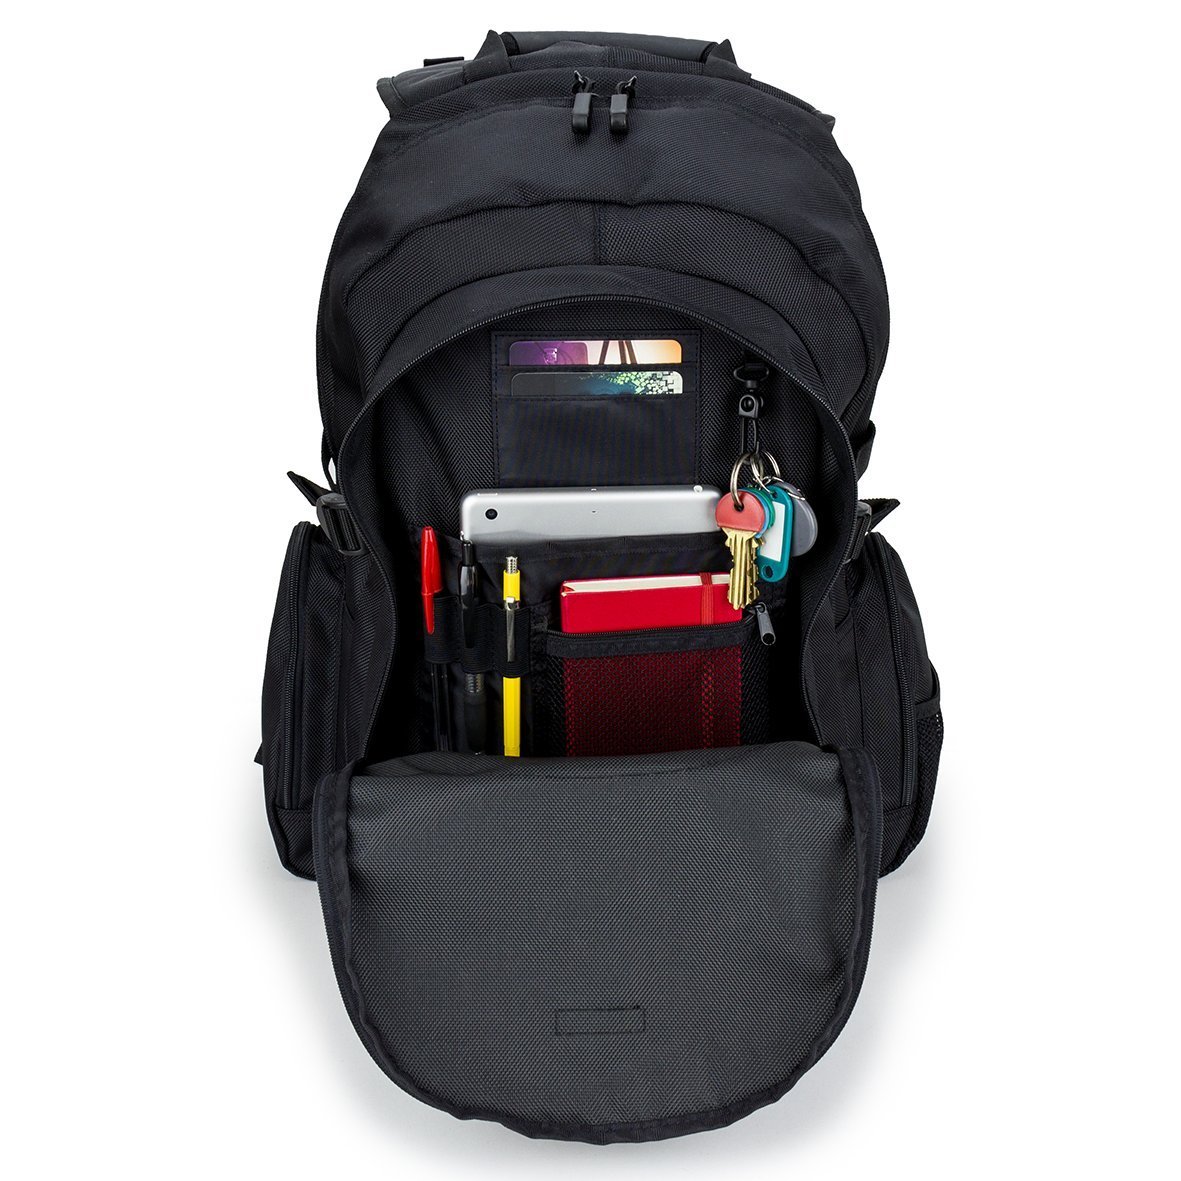 Targus CN600 15.6-inch Laptop Backpack